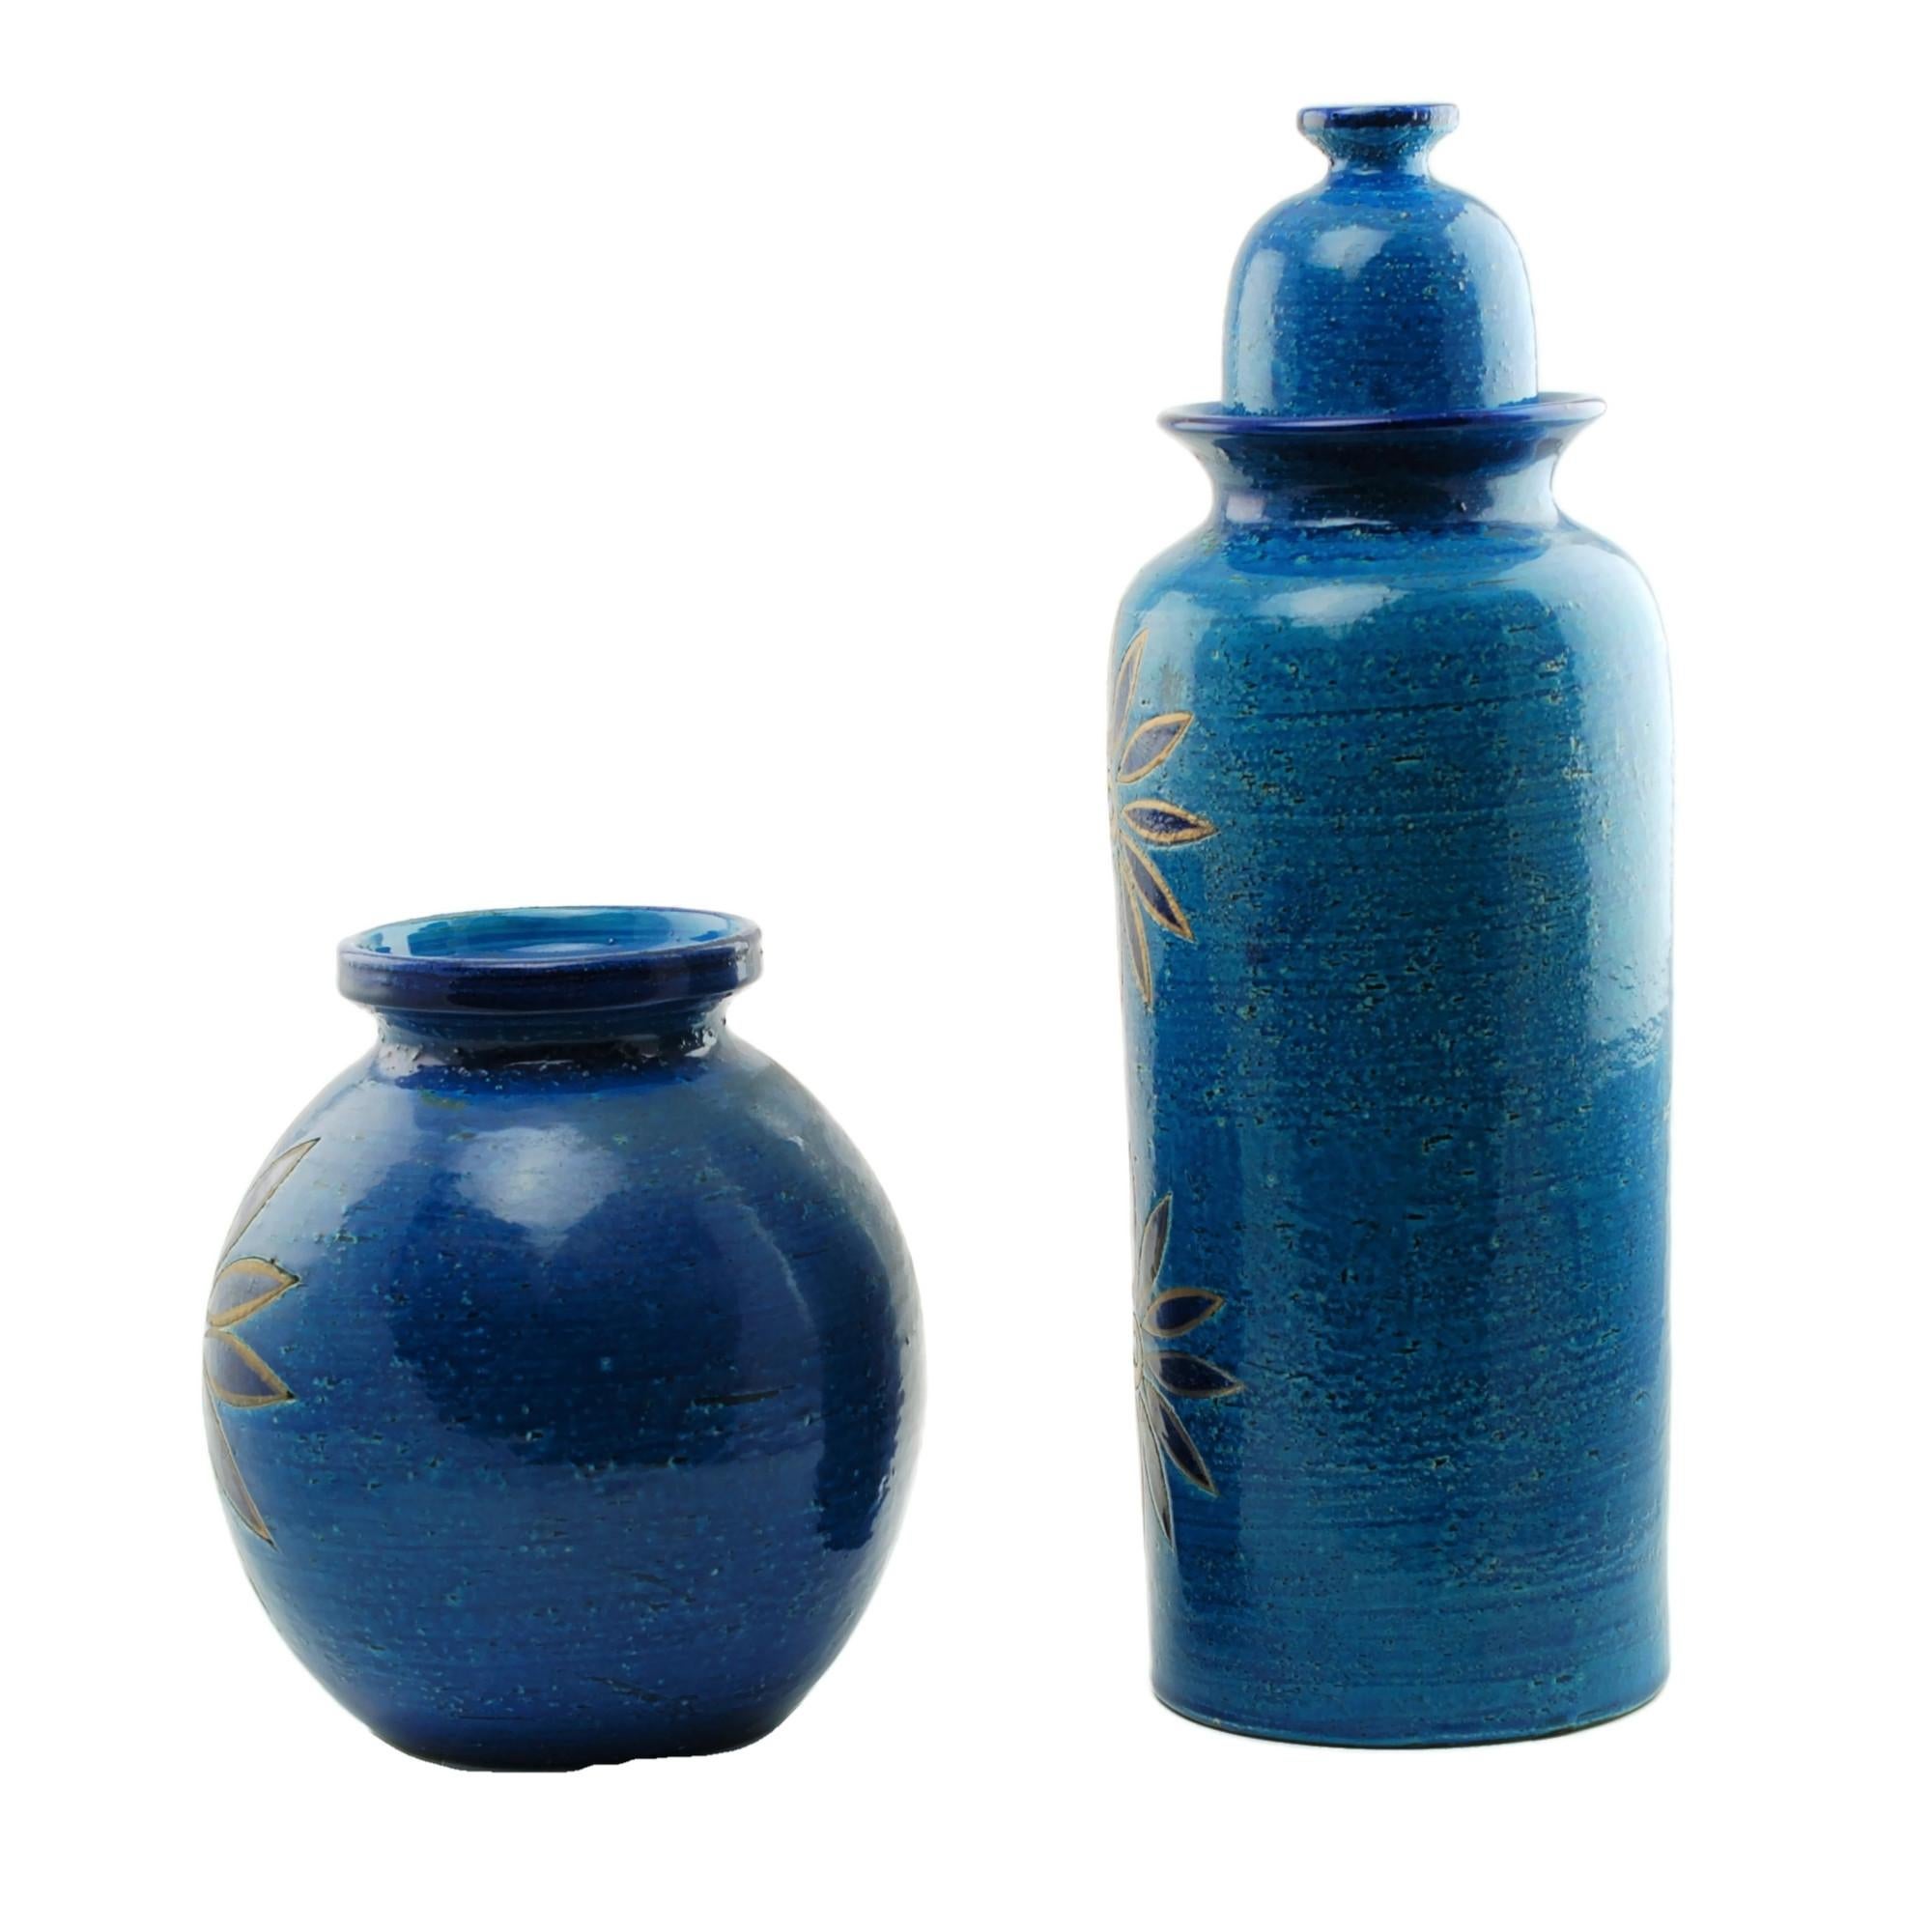 Ce vase et ce pot à couvercle en céramique ont été conçus par Aldo Londi, directeur artistique de Bitossi ceramiche à Montelupo, en Italie. Les deux pièces présentent de grandes fleurs stylisées et ont été finies dans la riche glaçure bleue Rimini